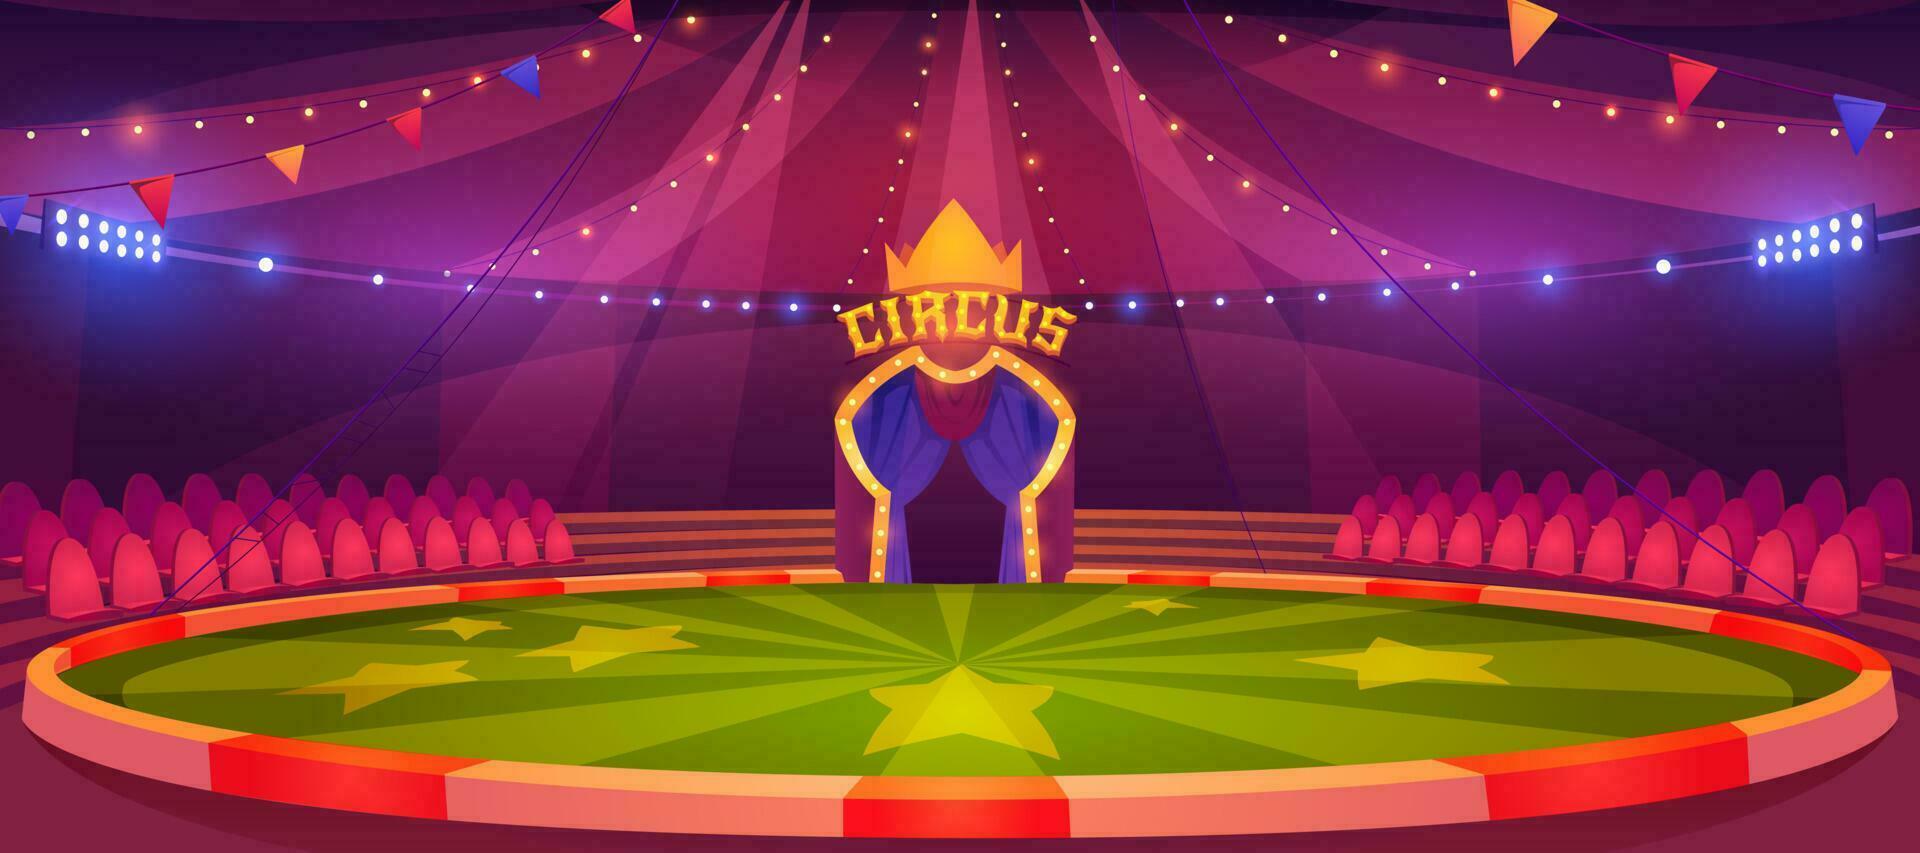 circo arena, redondo etapa para actuación vector